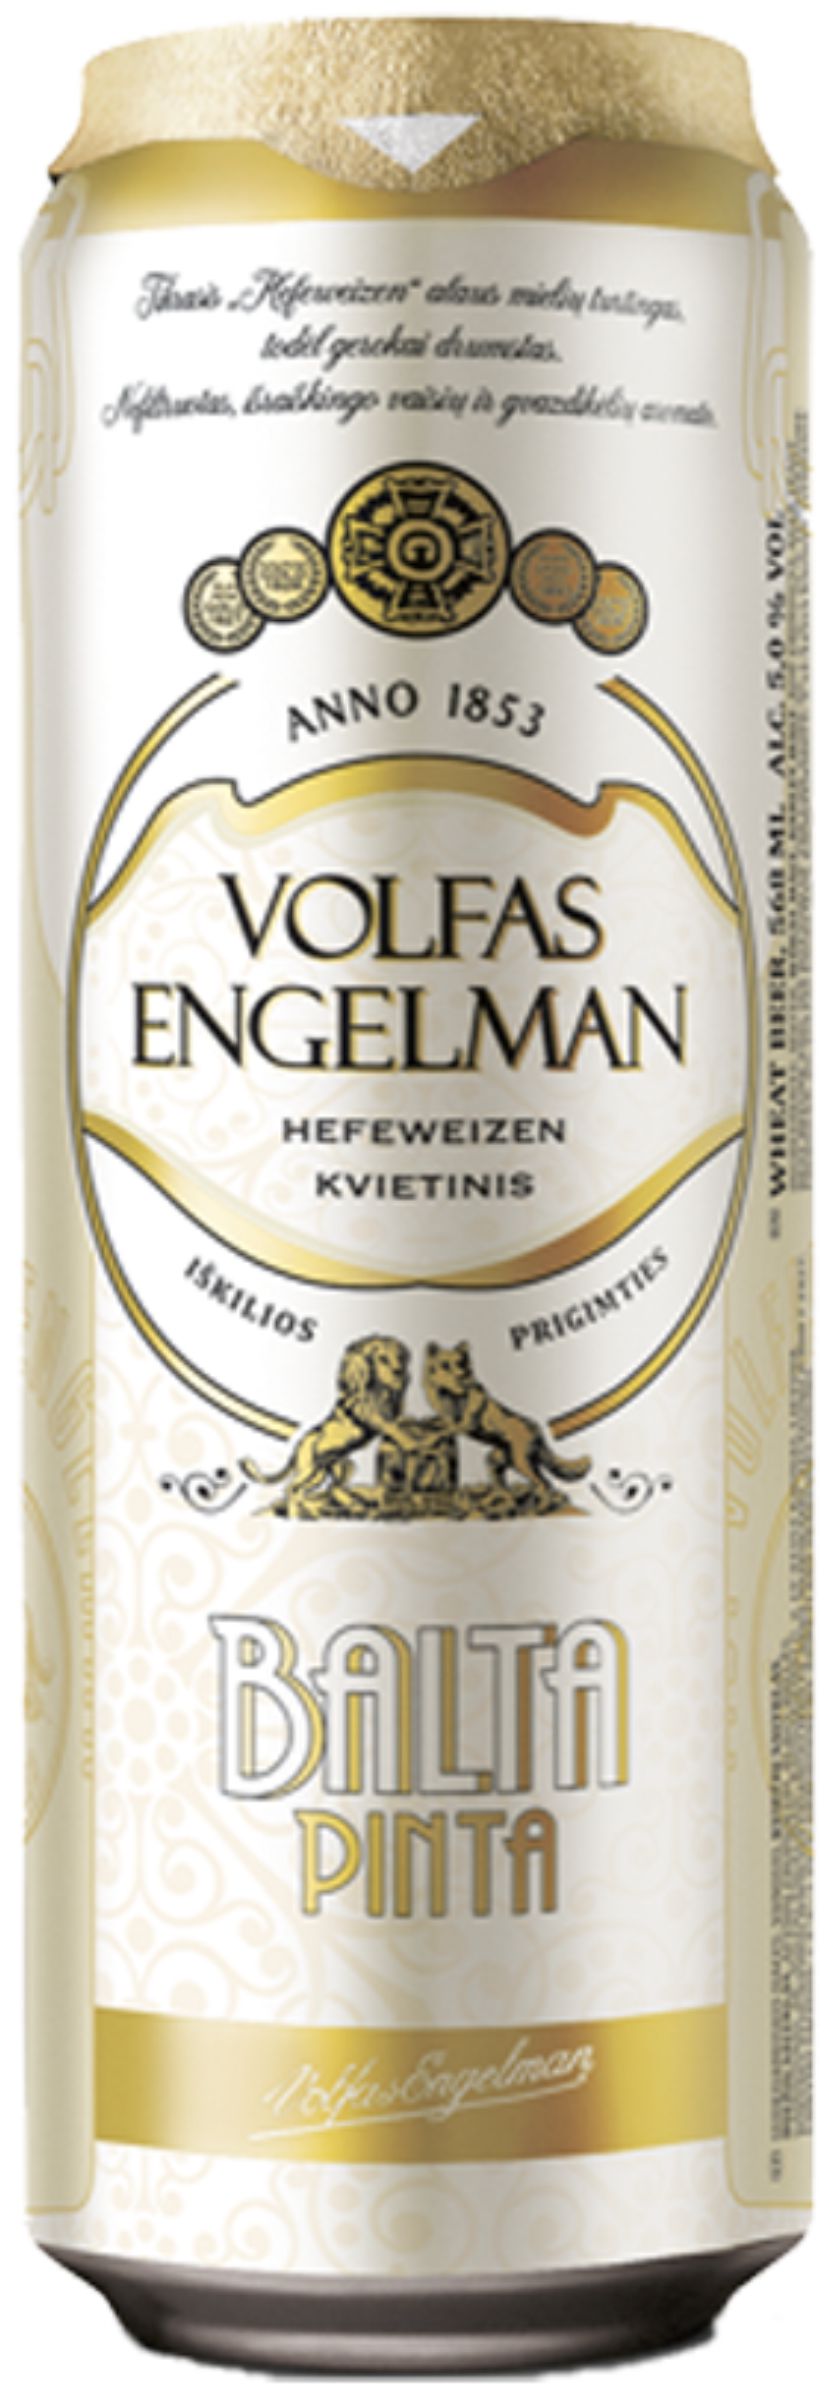 Пиво Вольфас Энгельман Балта Пинта светл. пшенич. нефильтрован. 0,568л бан, алк. 5,0%